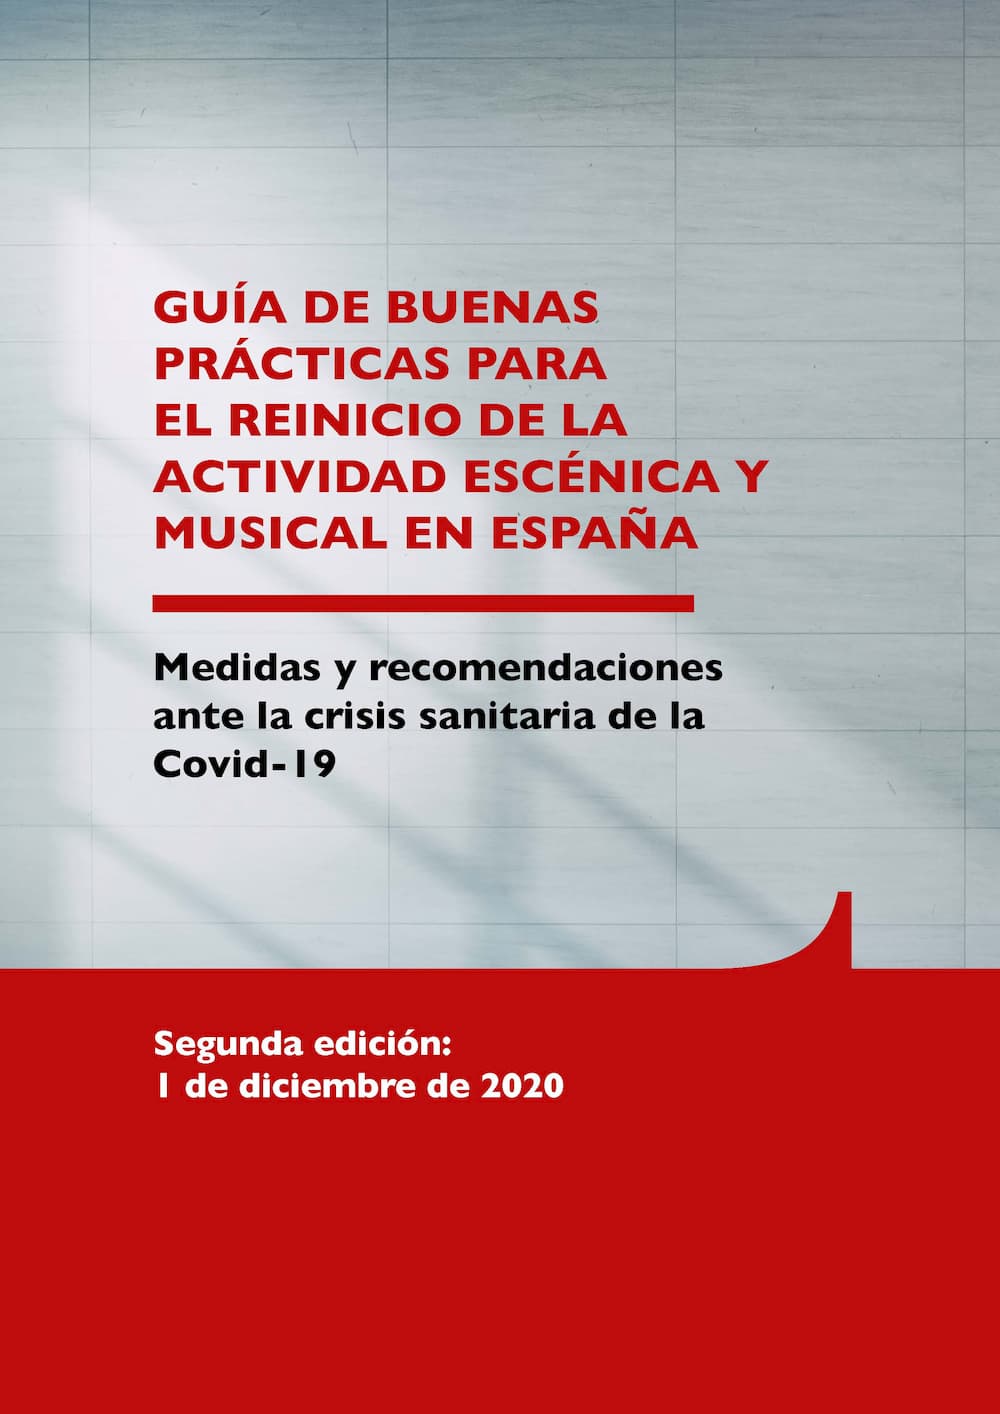 GUÍA DE BUENAS PRÁCTICAS PARA EL REINICIO DE LA ACTIVIDAD ESCÉNICA Y MUSICAL EN ESPAÑA